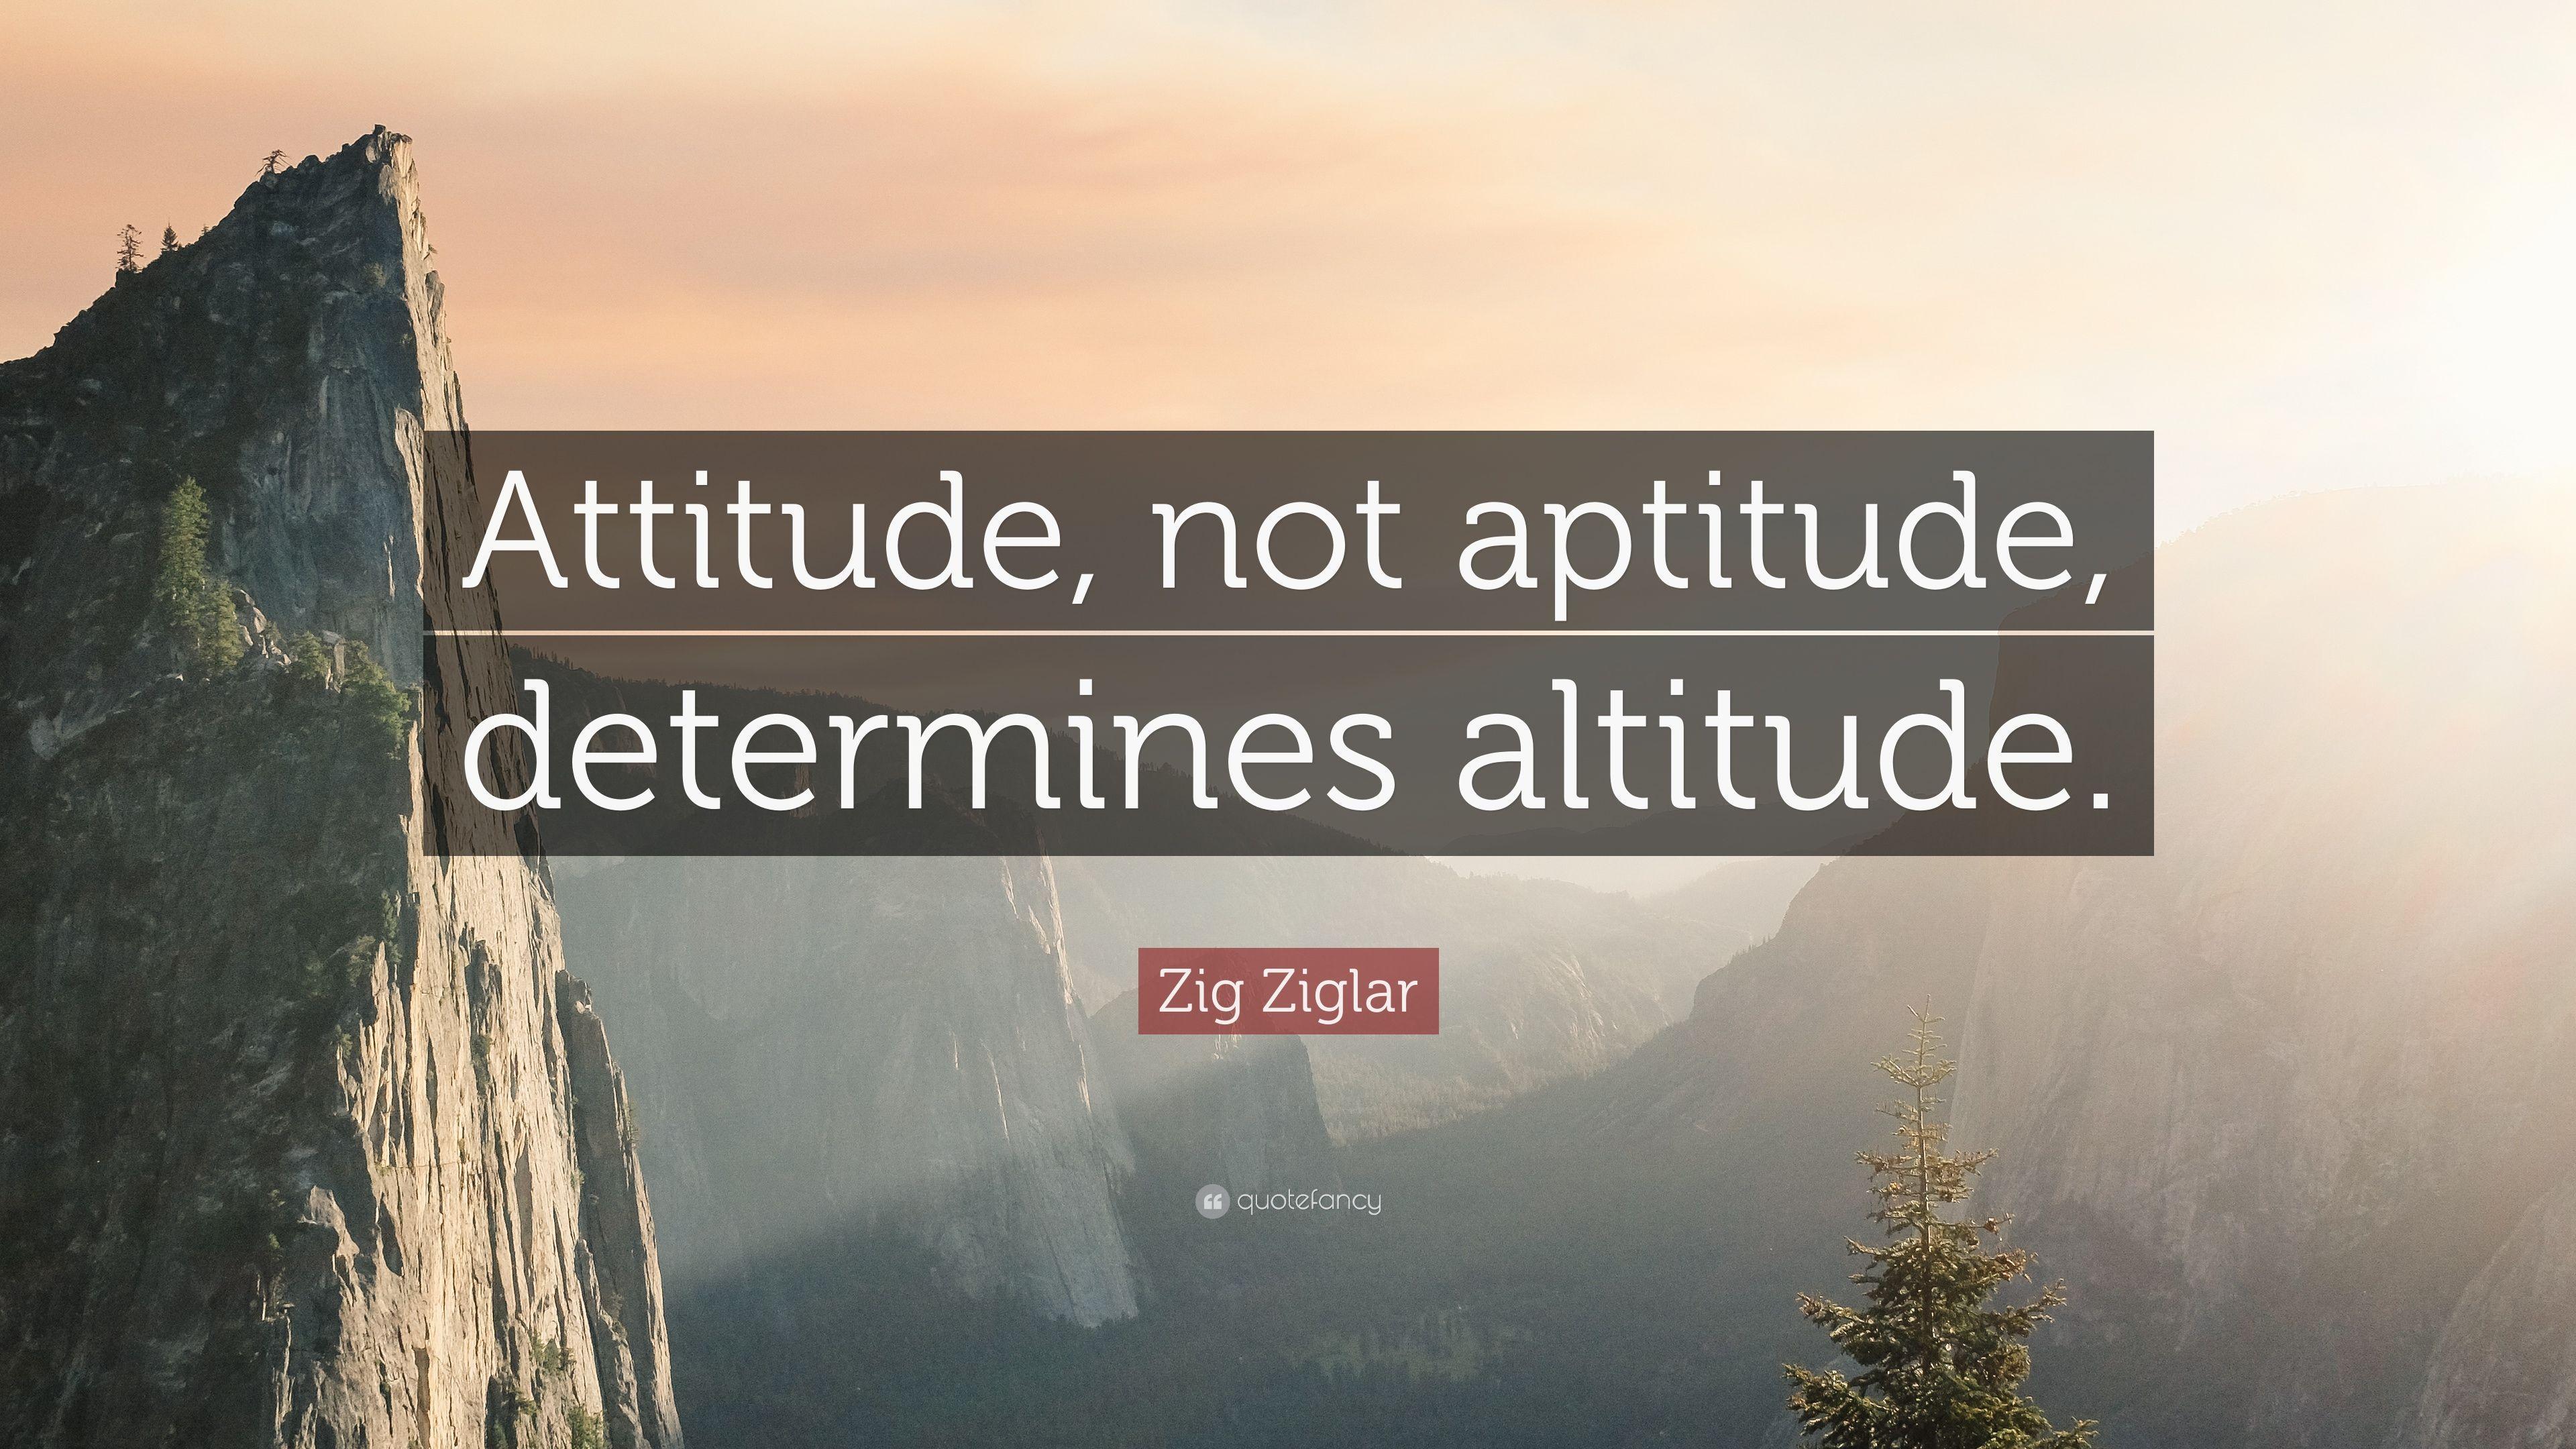 Zig Ziglar Quote: “Attitude, not aptitude, determines altitude